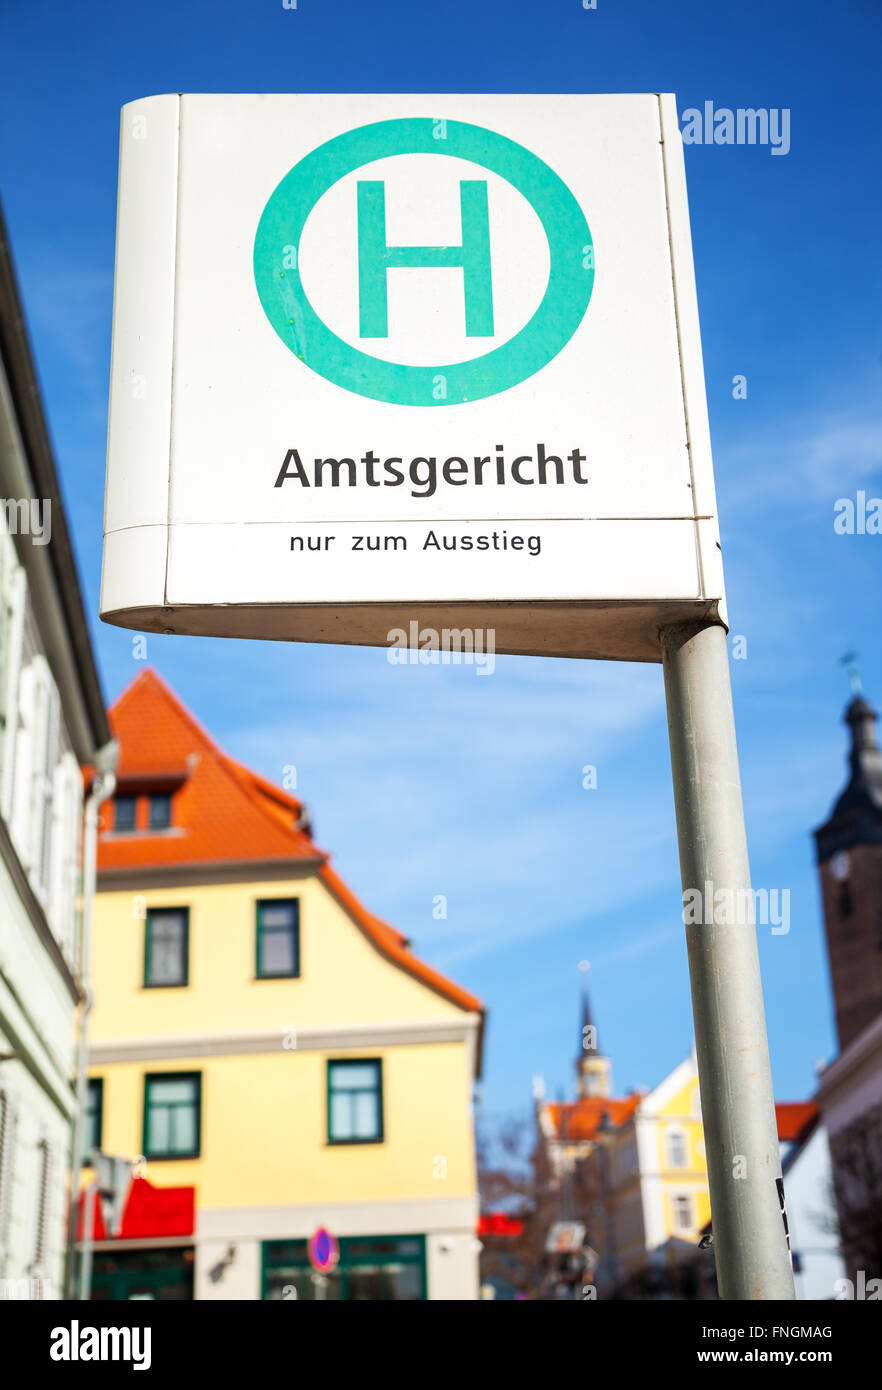 L'allemand signe l'arrêt de bus dans une ville sur l'Amtsgericht - nur zum Ausstieg - signe fait - district court - seulement sortir Banque D'Images